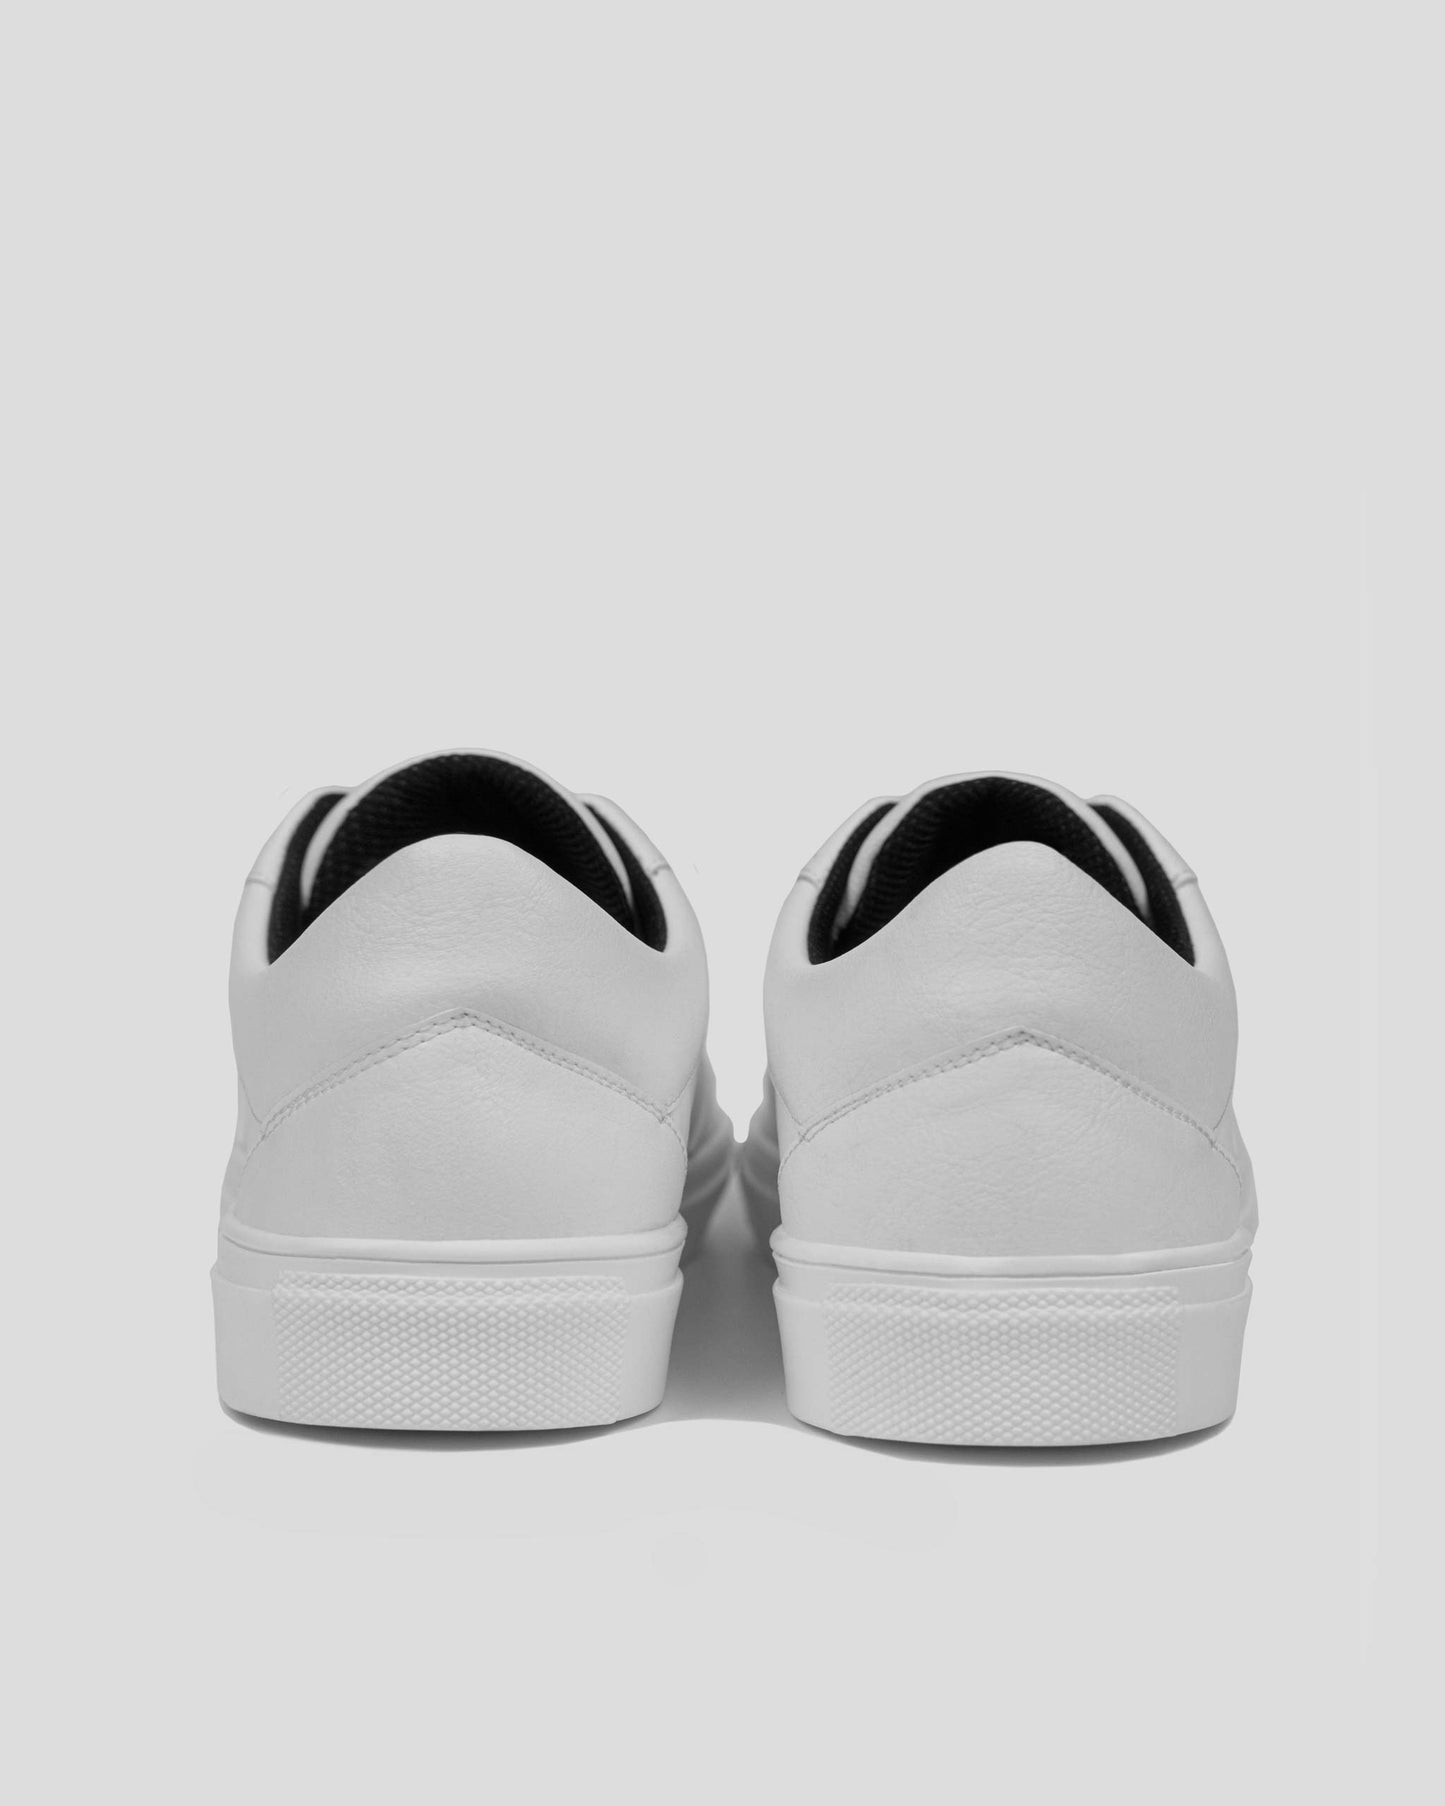 Bohema Sneakers Awake White sneakers made of Vegea grape leather